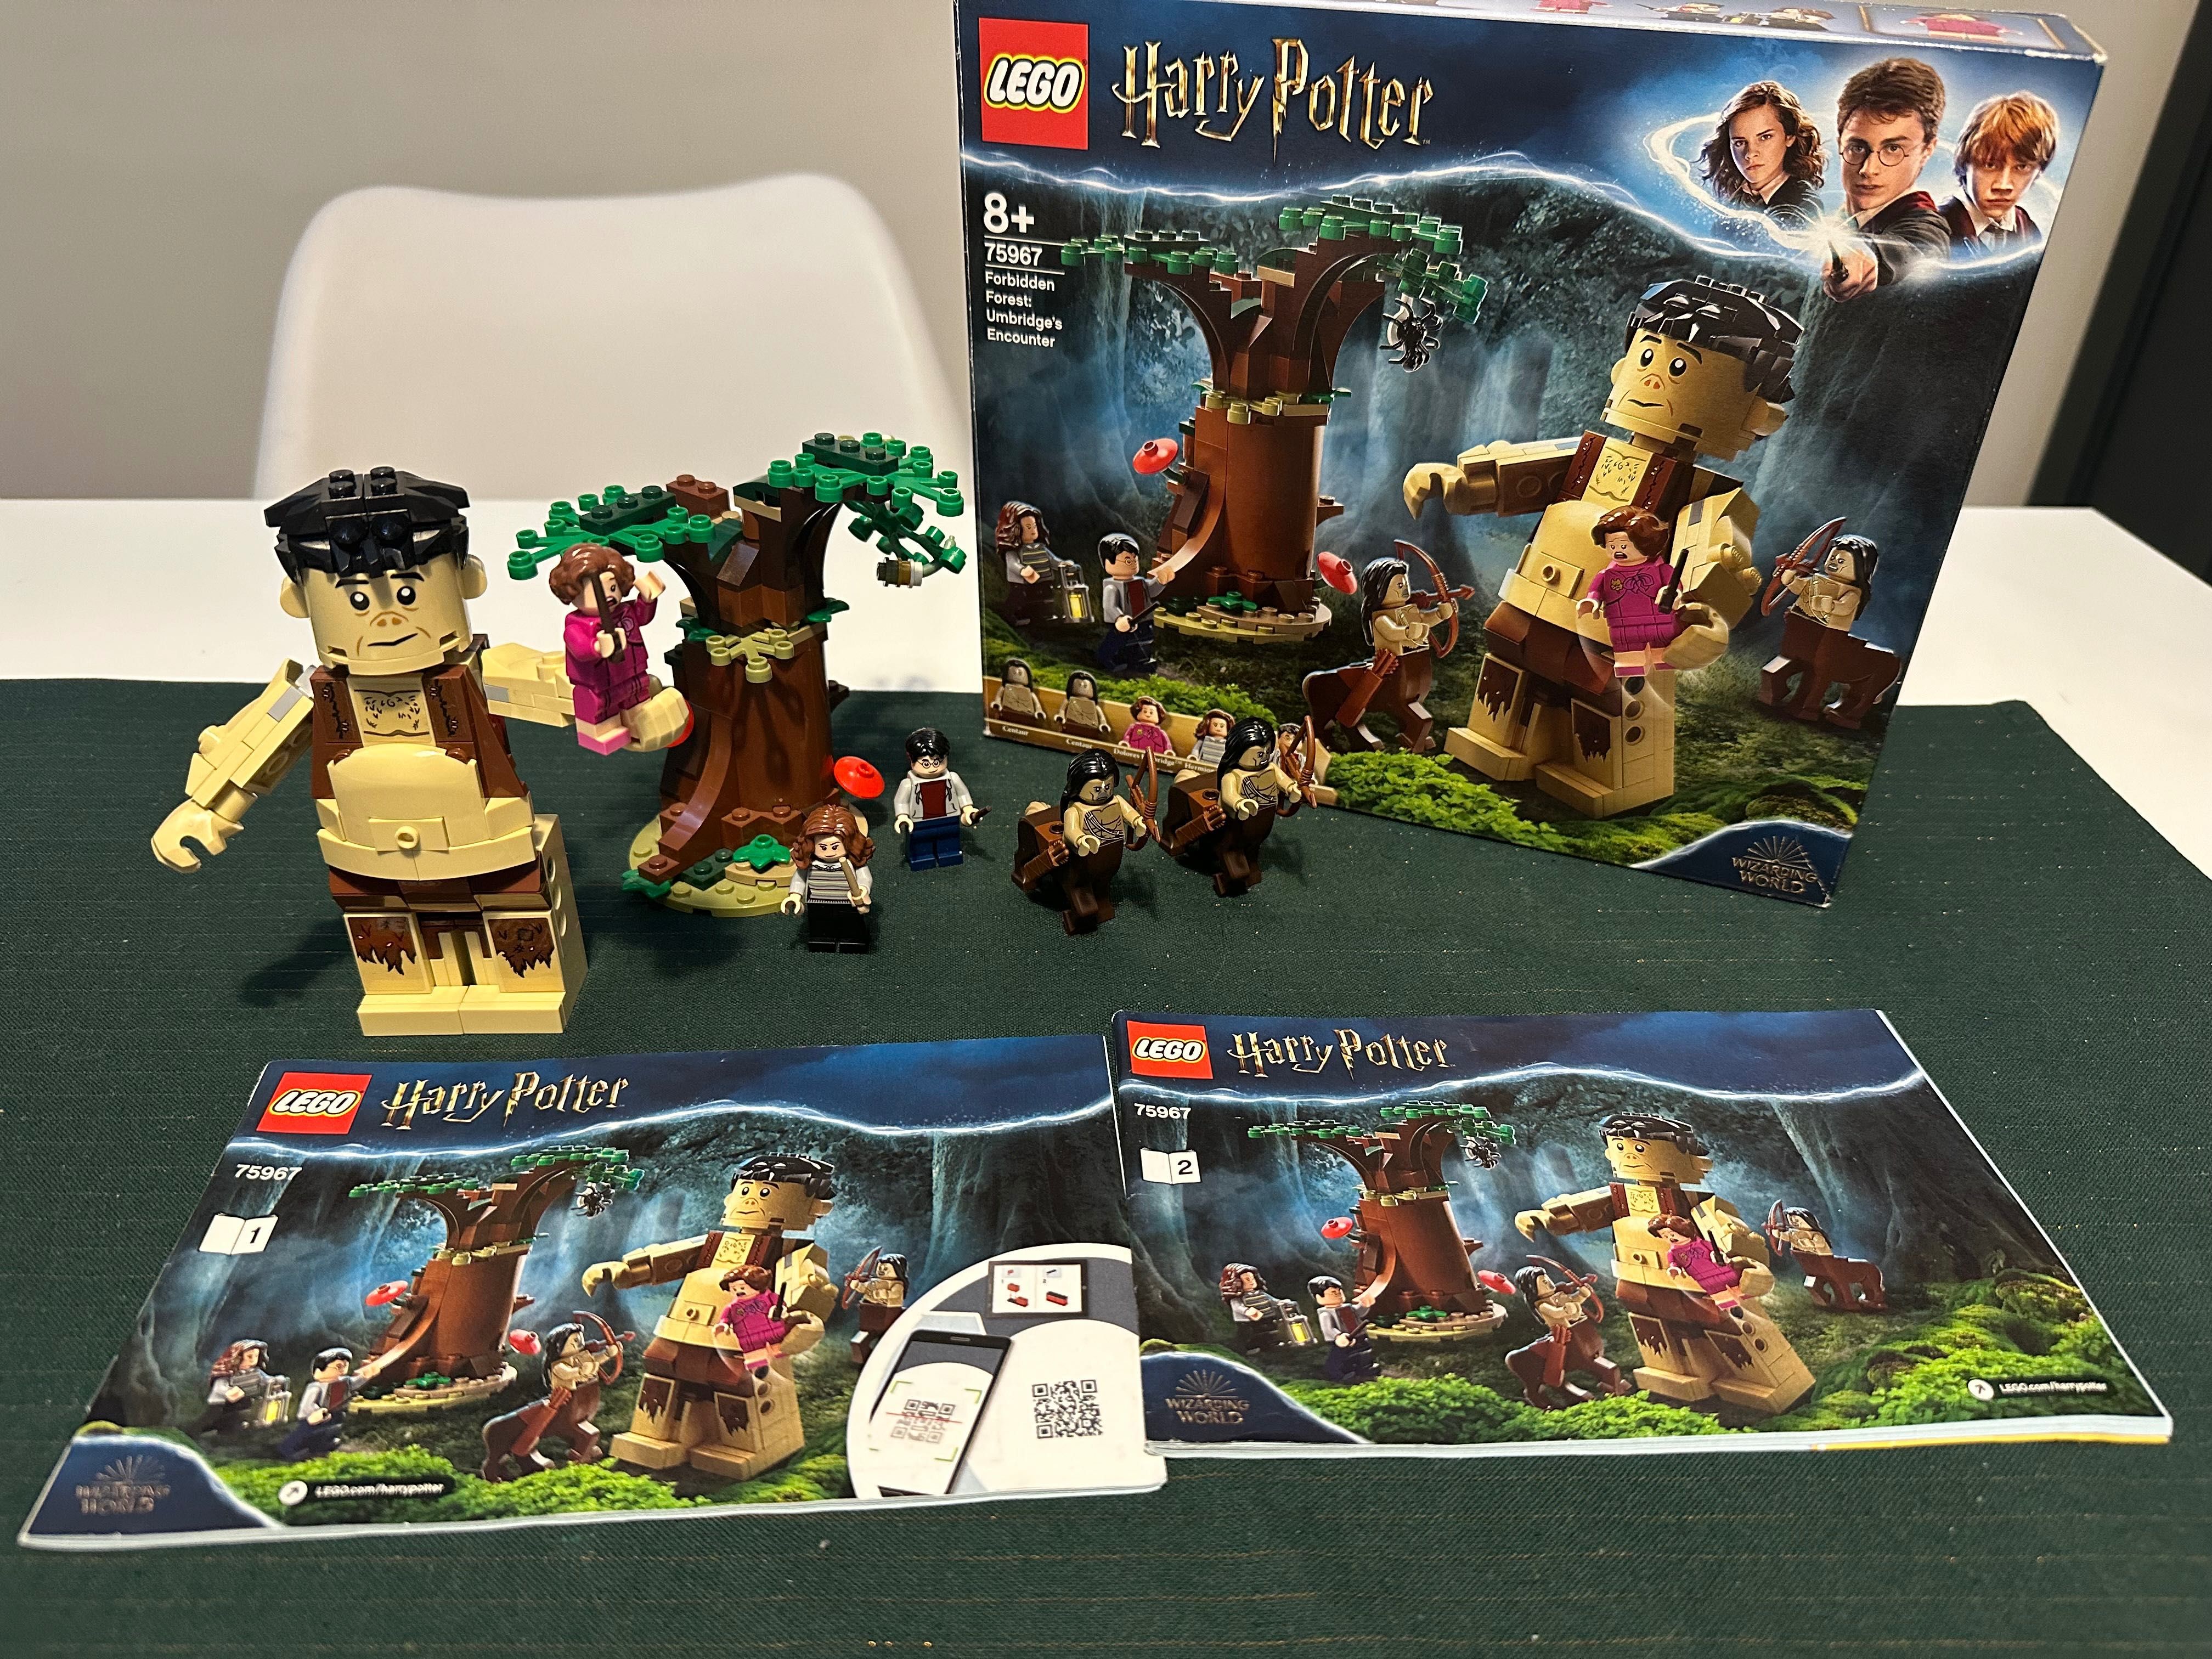 LEGO Harry Potter 75967 Zakazany Las: spotkanie Umbridge